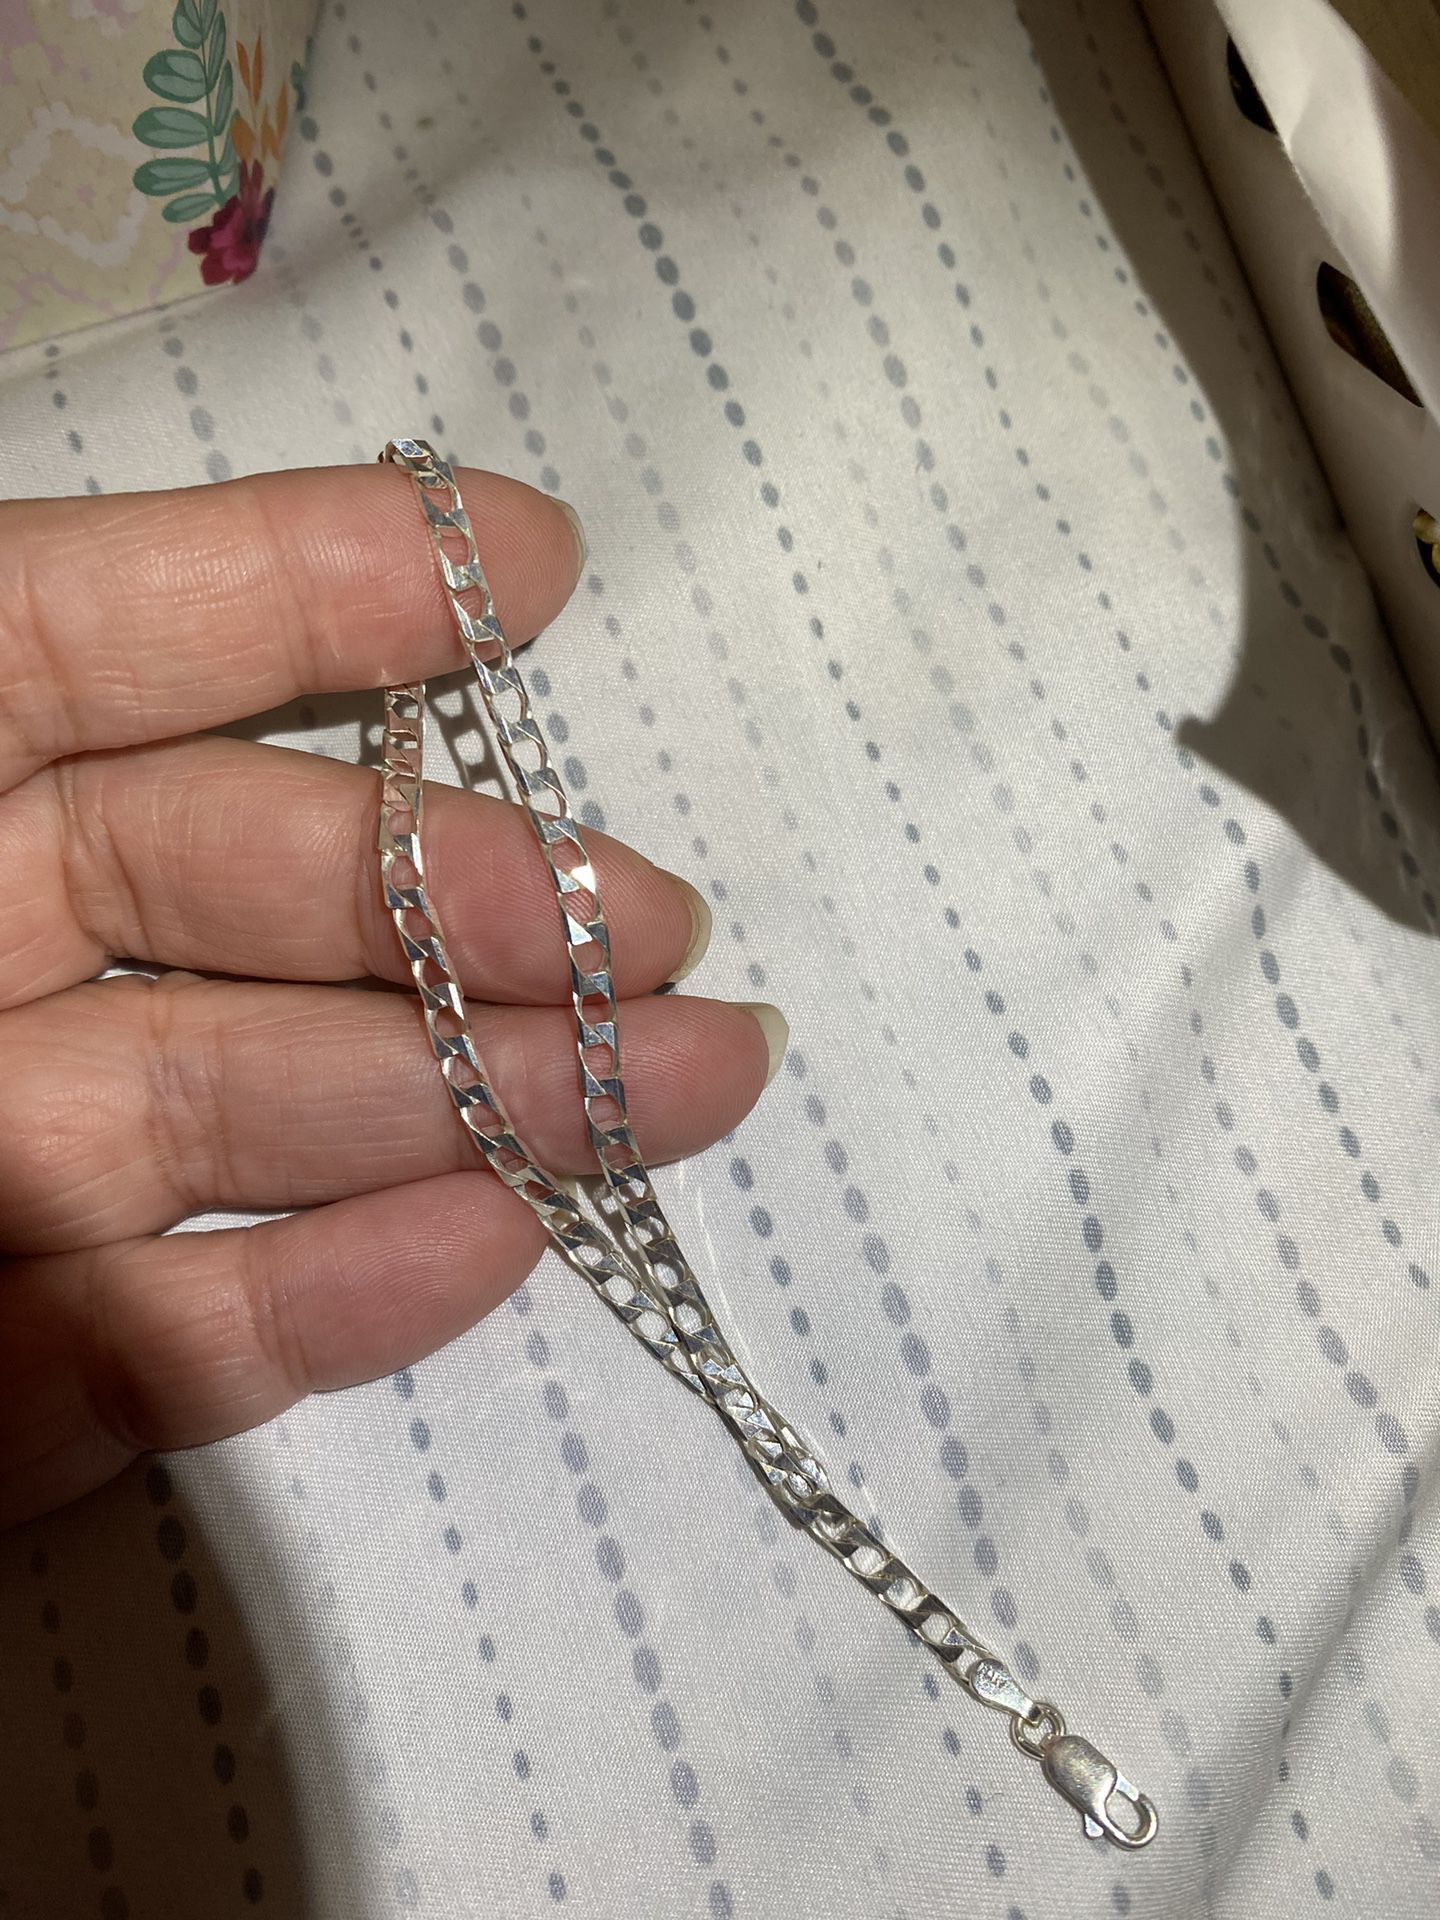 Real 925 Sterling Silver Bracelet 